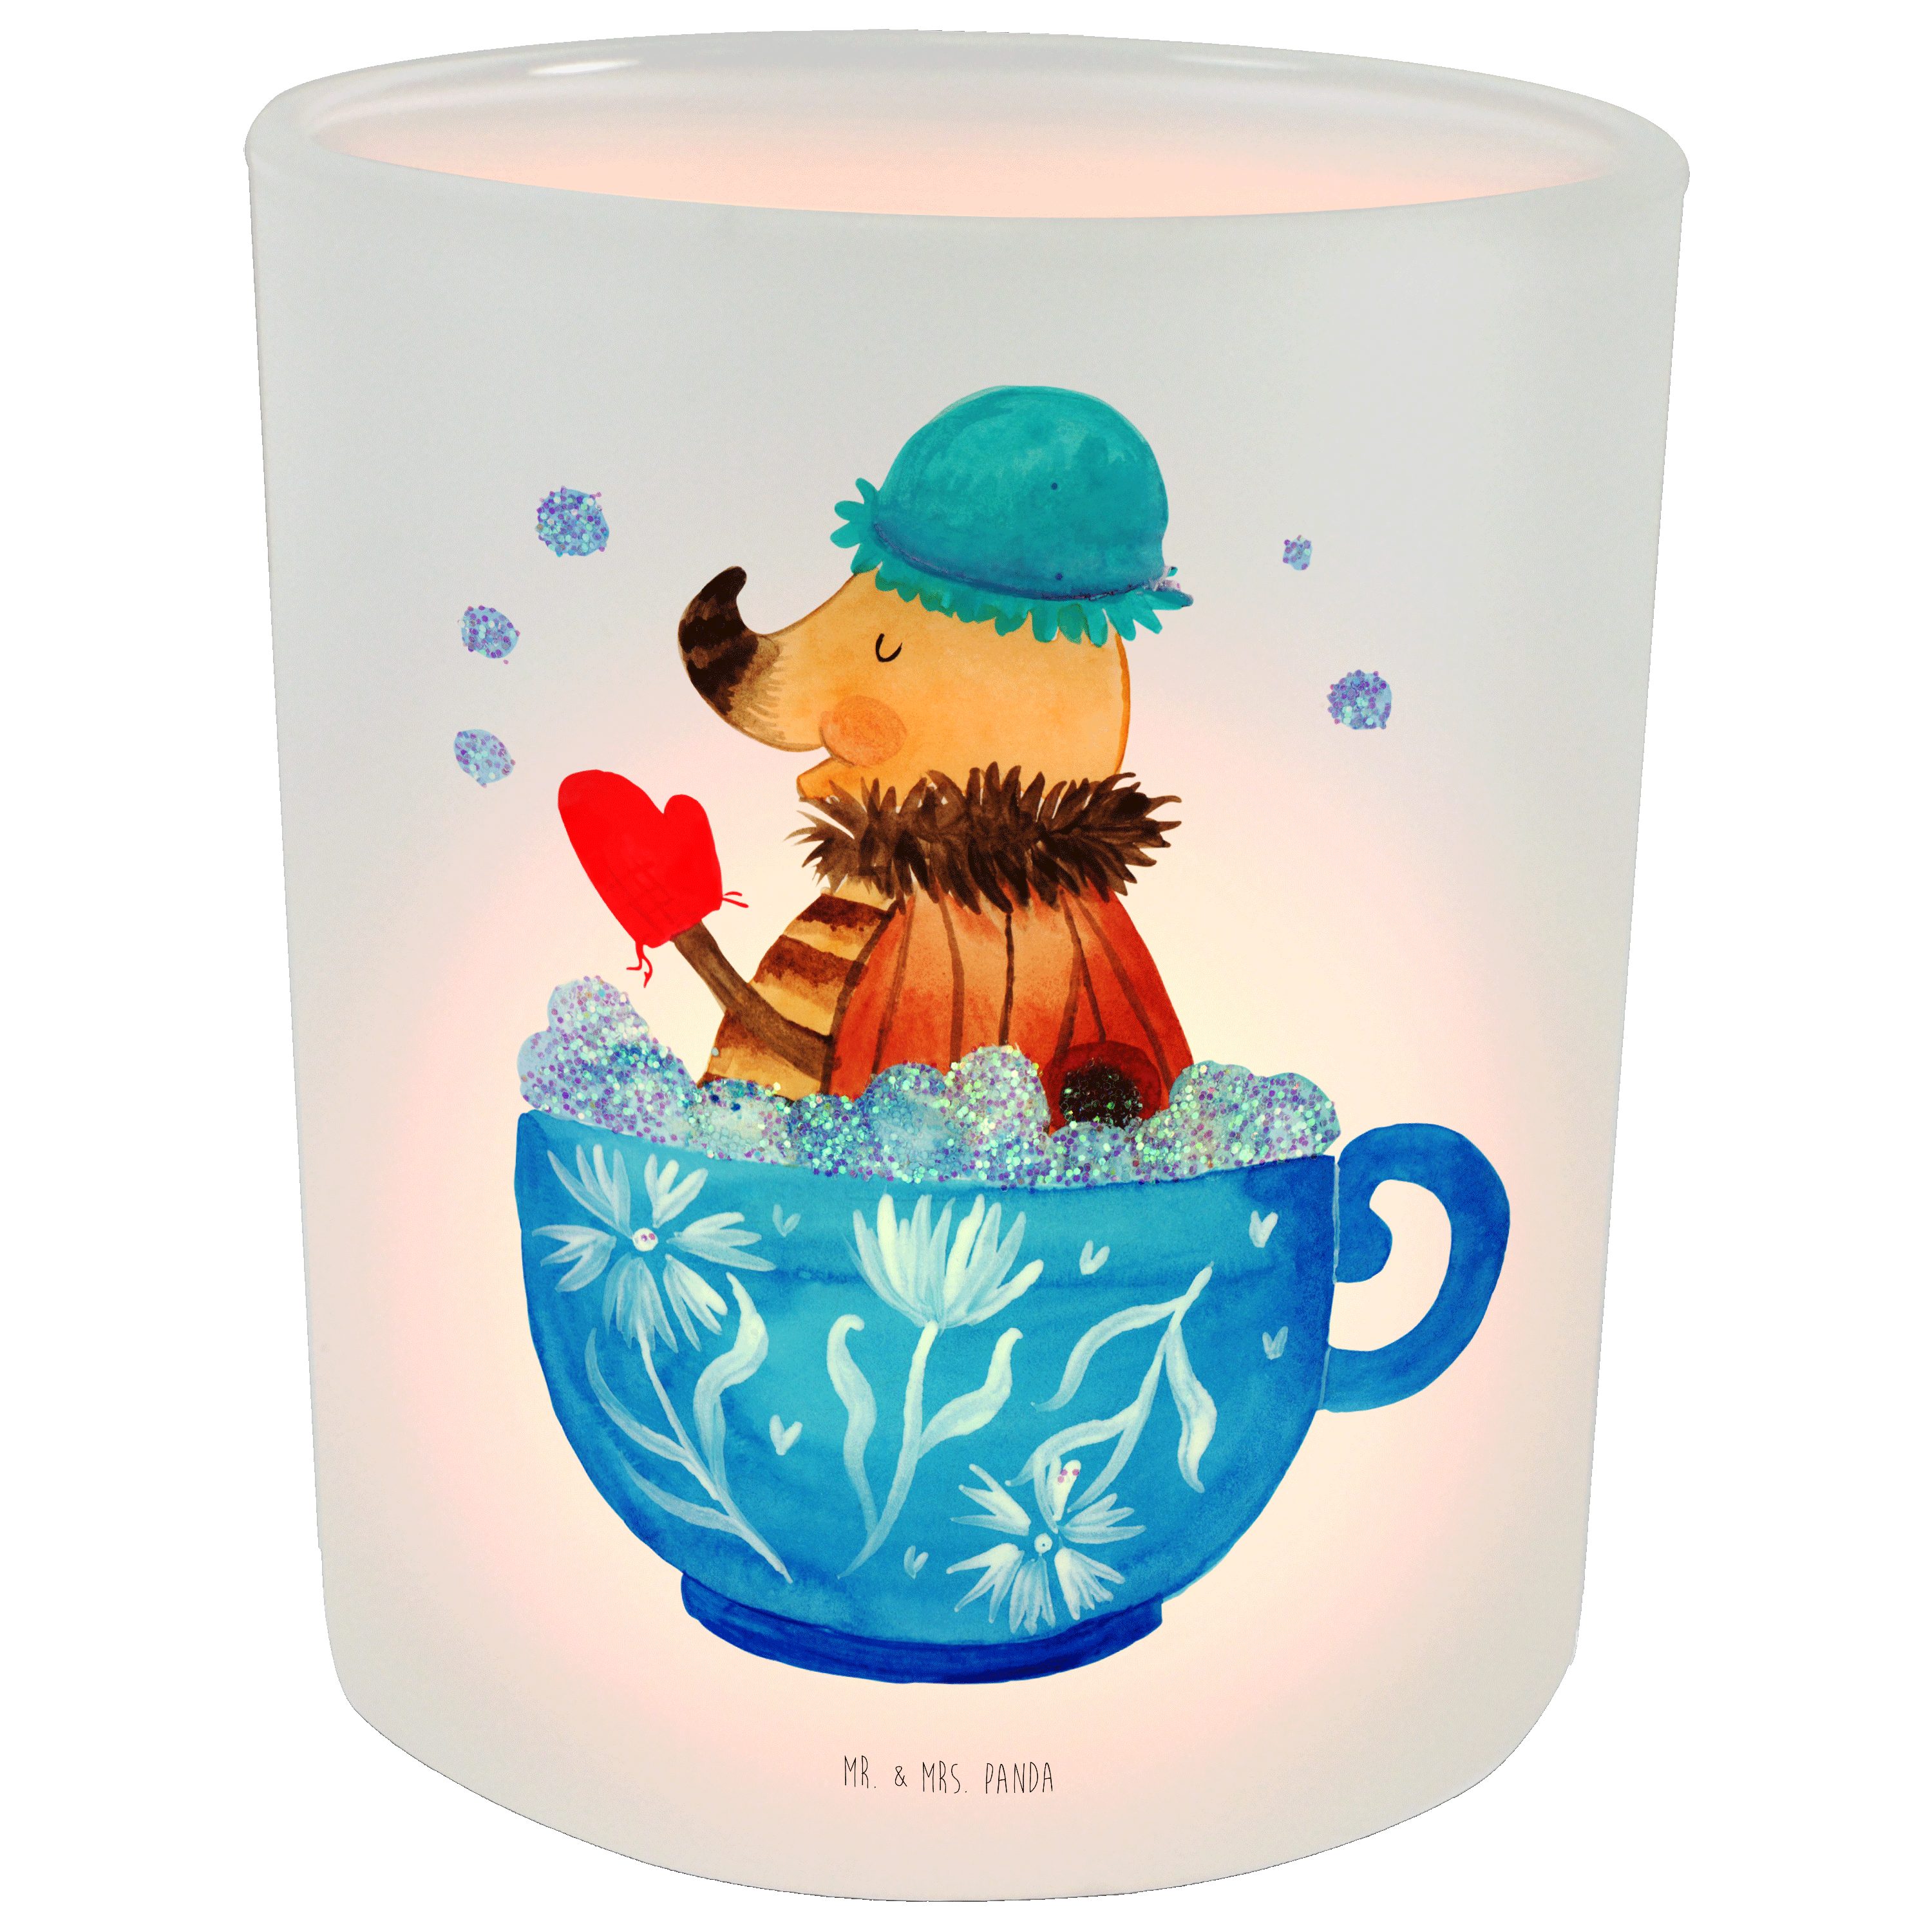 Mr. & Mrs. Panda Windlicht Nachtfalter Schaumbad - Transparent - Geschenk, Kerzenglas, lustige S (1 St), Gemütlich